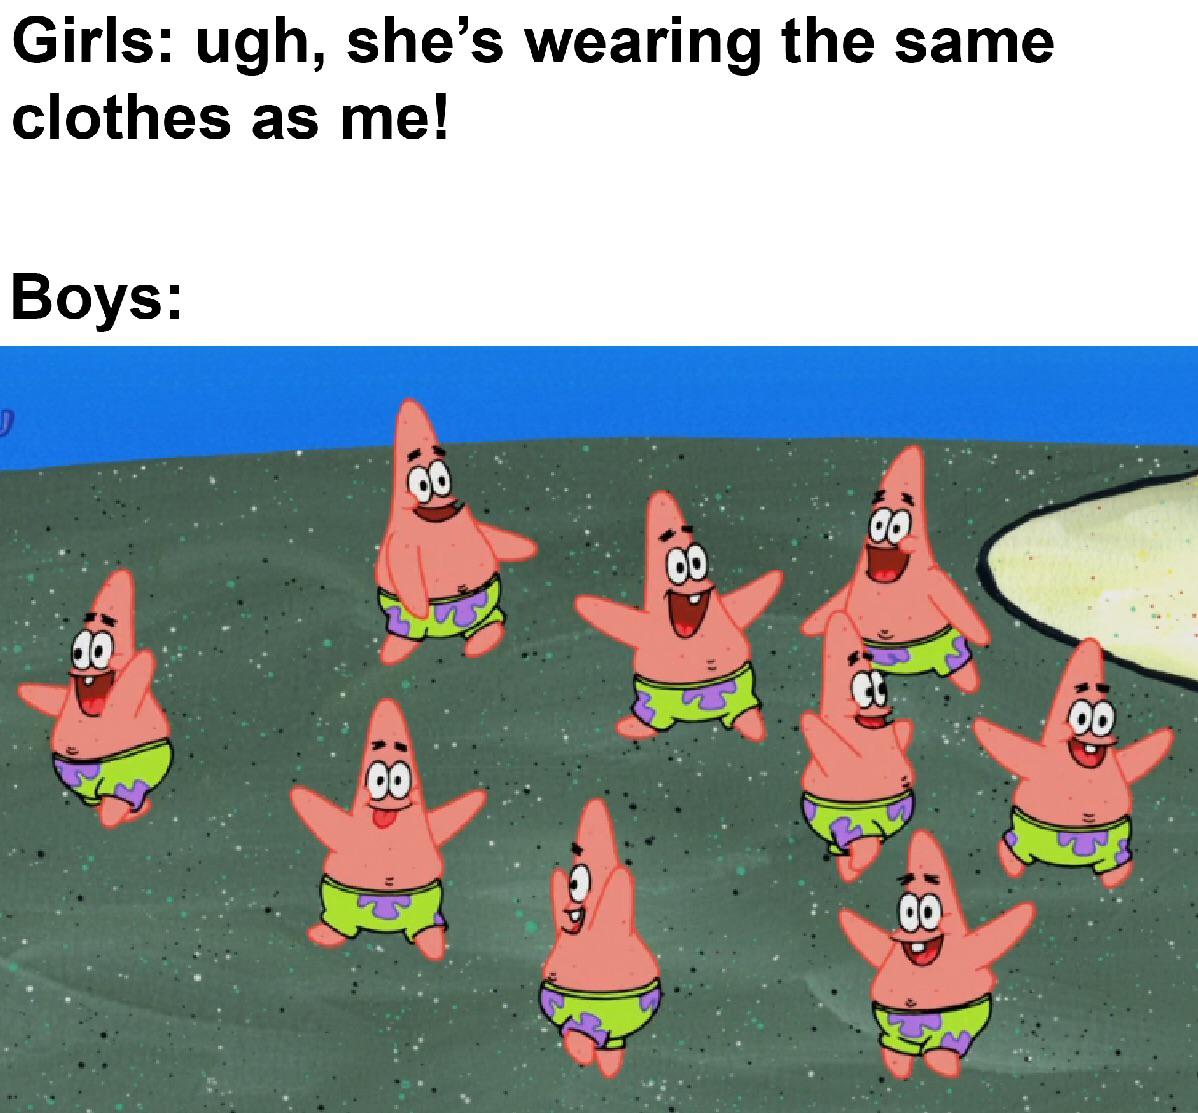 spongebob spongebob-memes spongebob text: Girls: ugh, she's wearing the same clothes as me! Boys: 